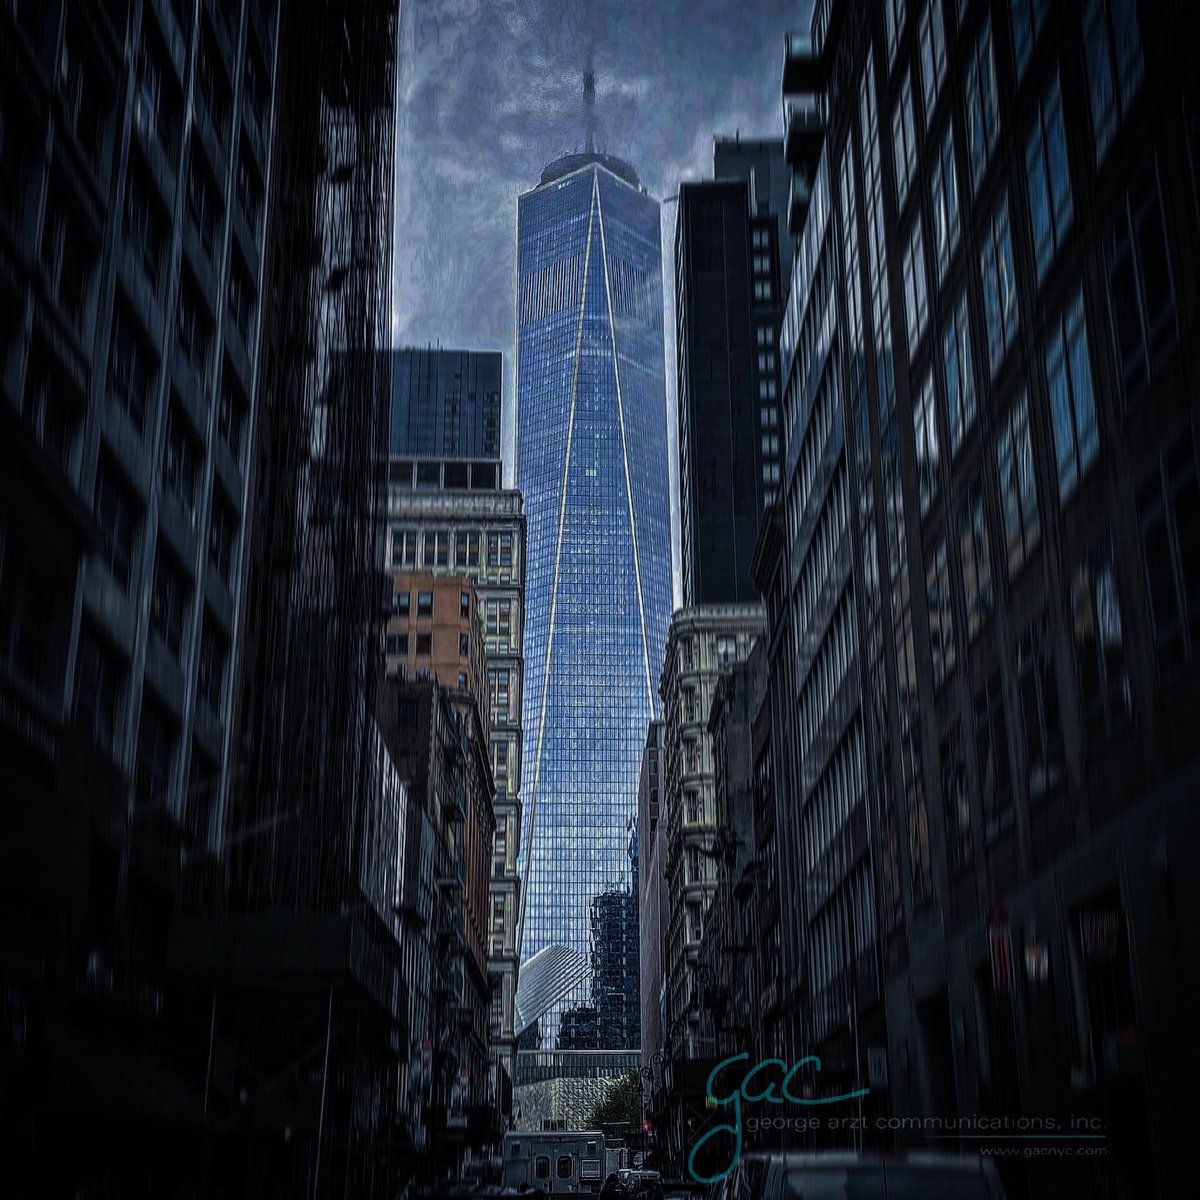 Standing tall amidst the gloom.

#georgearzt #georgearztcommunications #worldtradecenter #freedomtower #nyc  #newyork #newyorkcity #nycskyline #newyorkskyline #nycarchitecture #newyorkarchitecture #iloveny #ilovenewyork @OneWTC